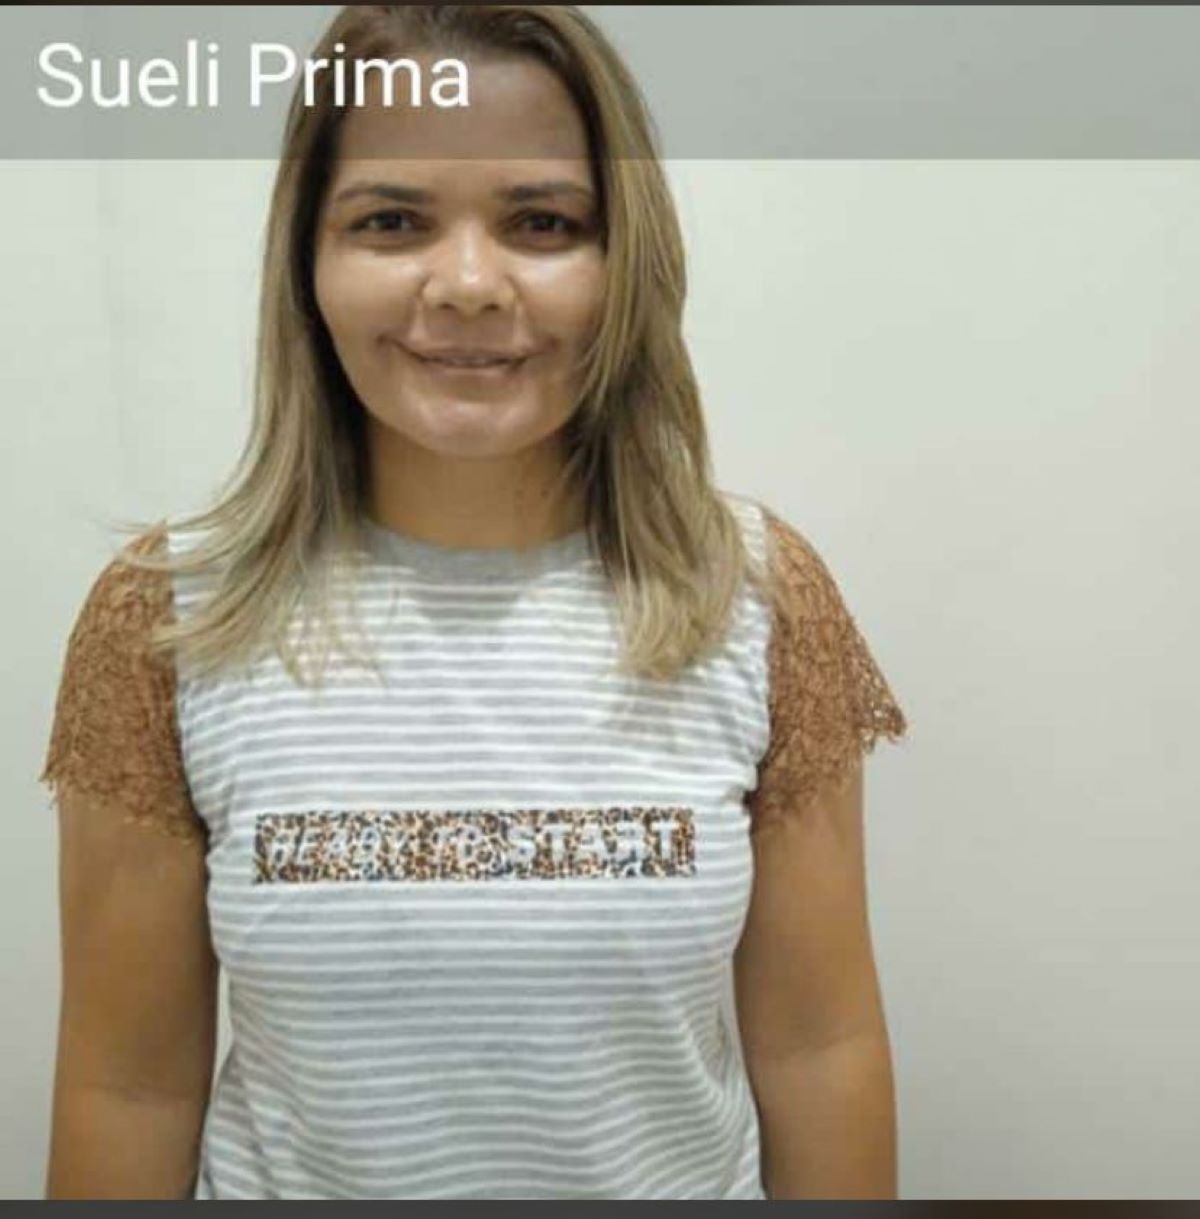 Feminicídio: Ex-companheiro mata mulher a tiros em Paulistana